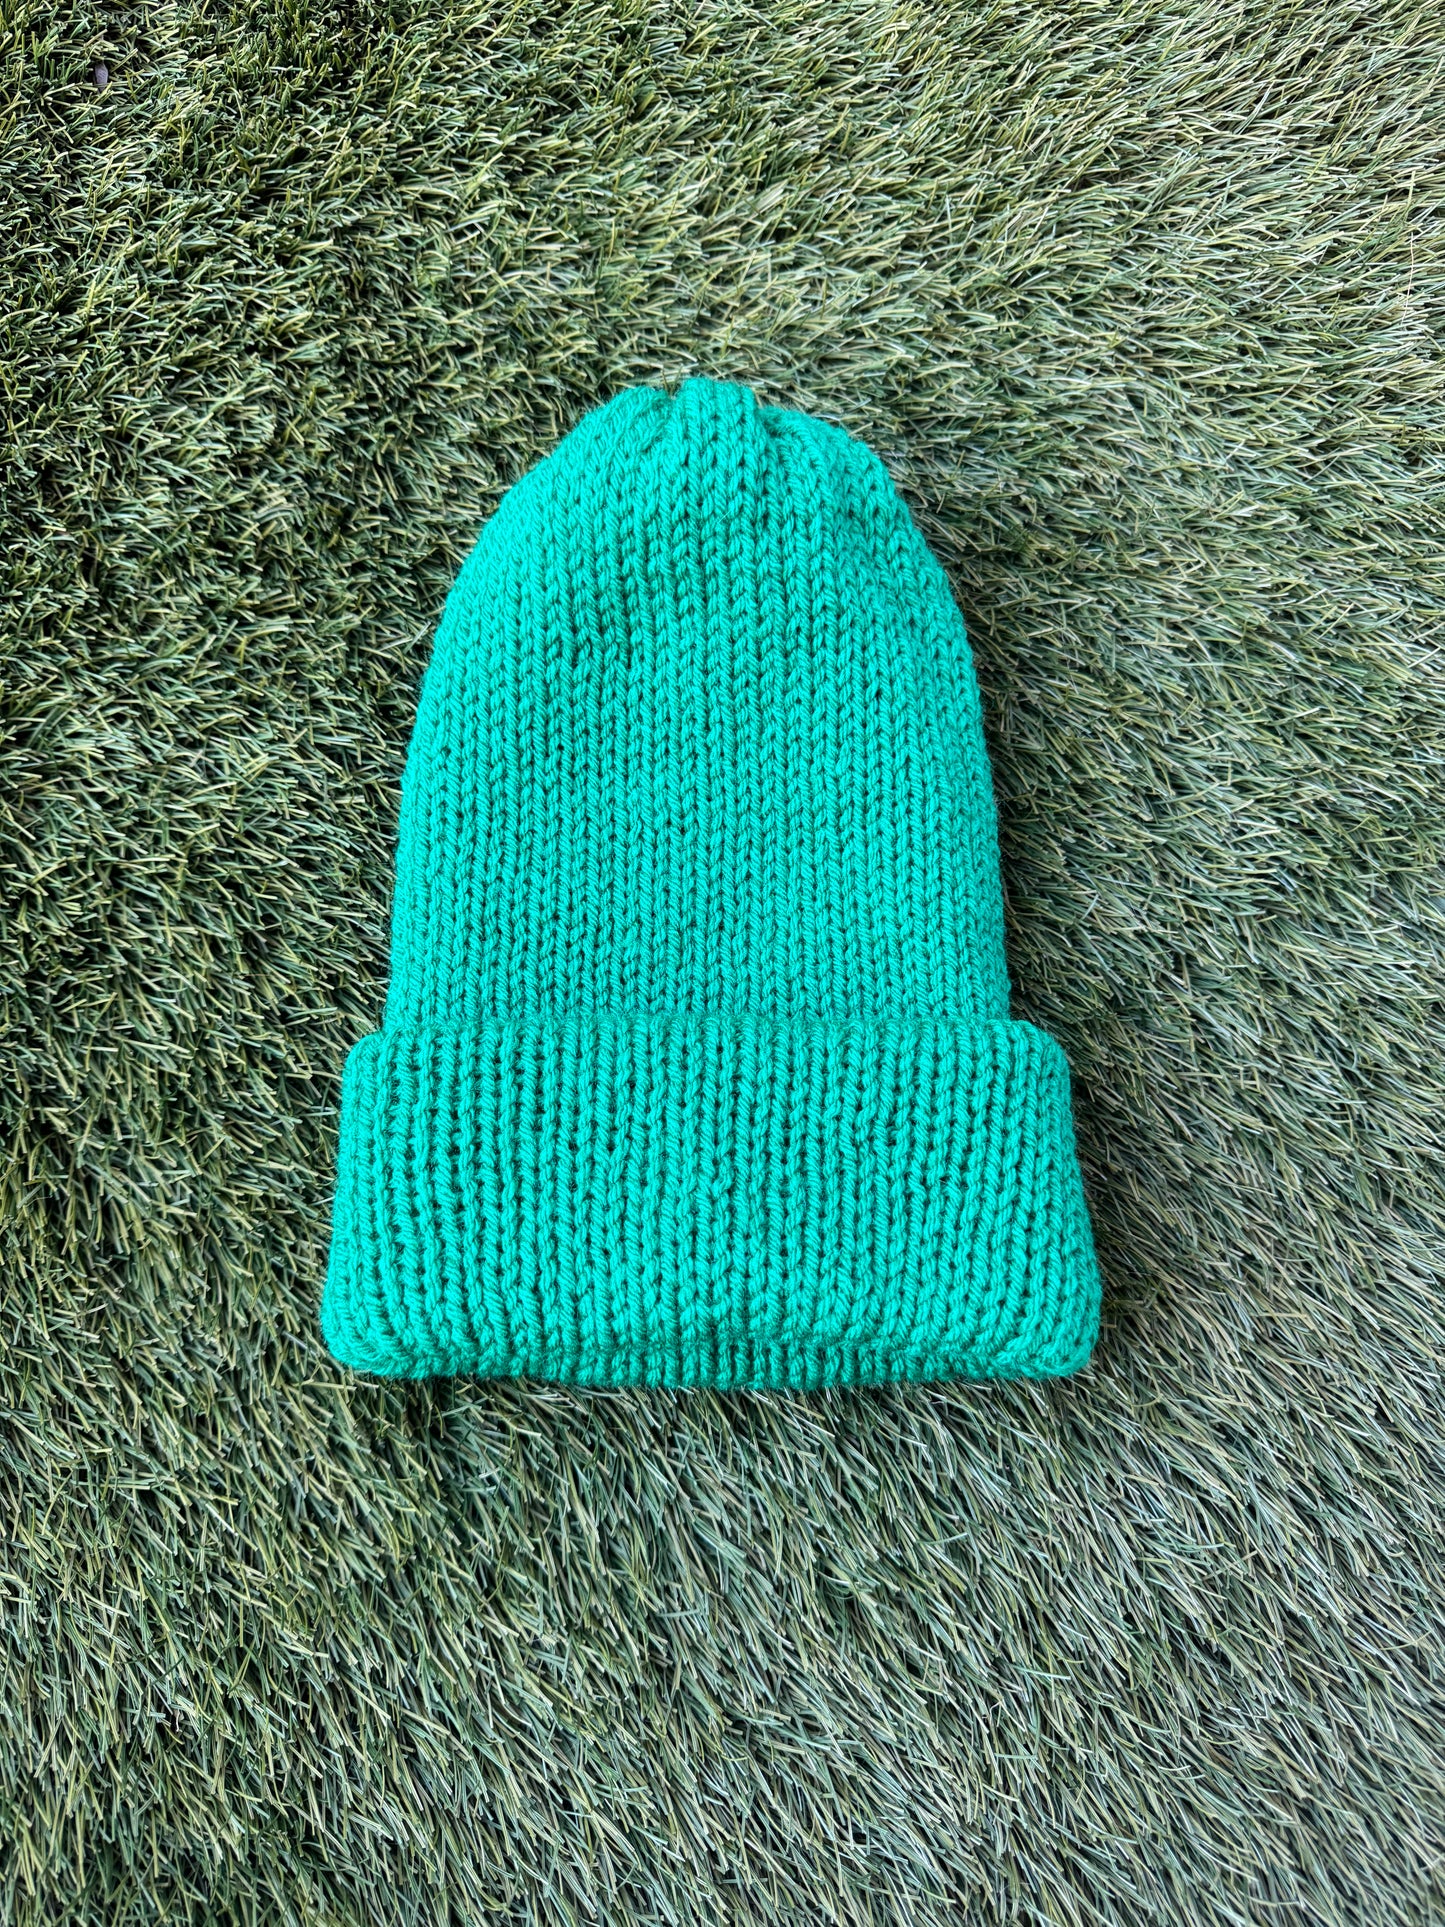 Green Knit Beanie